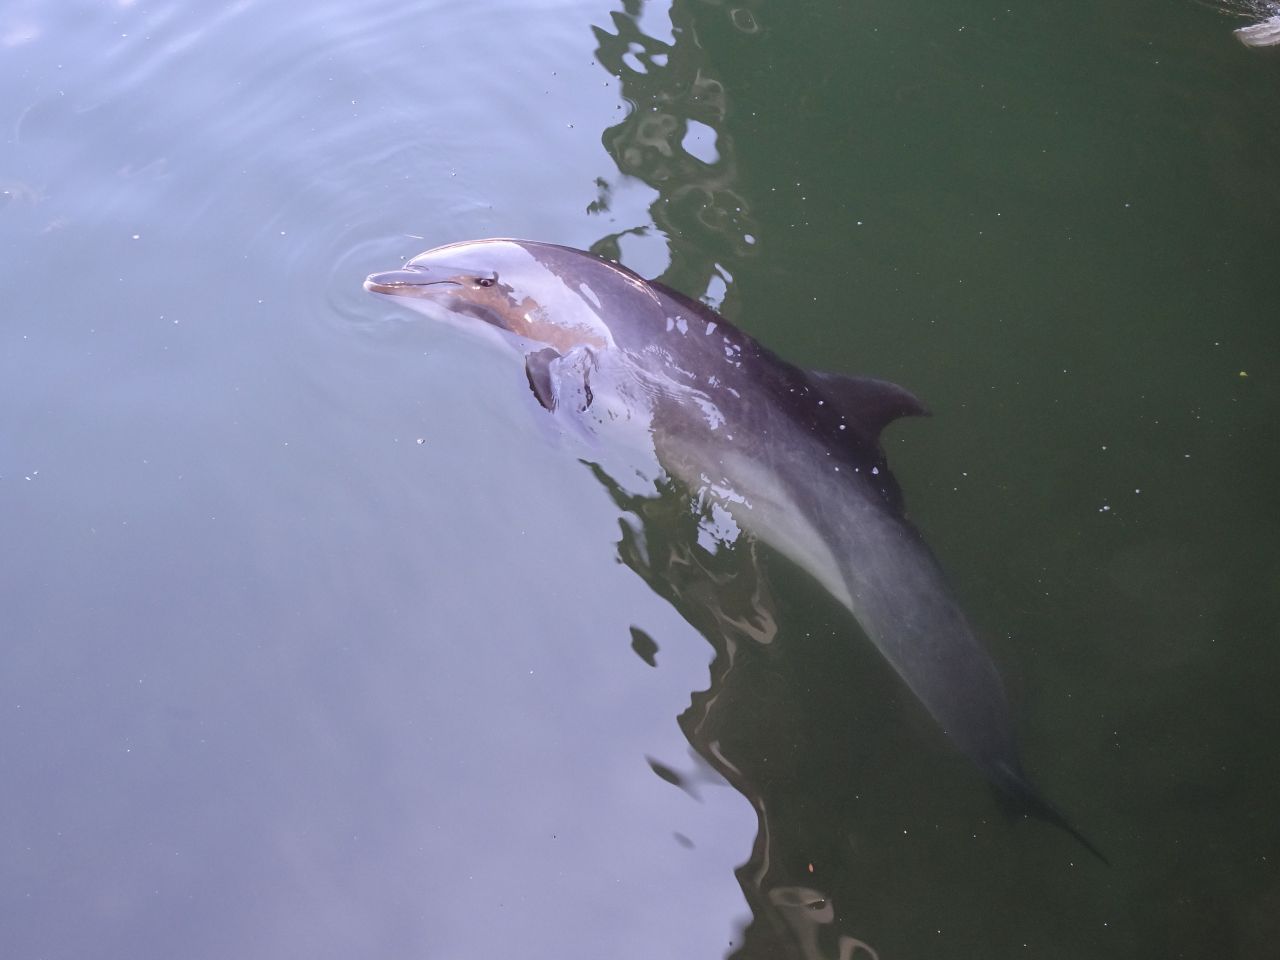 Delfine schlafen nur mit einer Hirnhälfte, die andere bleibt aktiv, um mögliche Gefahren zu erkennen. Dabei wechseln sich die Hirnhälften ab. Zwischendurch kommen sie immer wieder an die Wasseroberfläche, um Luft zu holen.